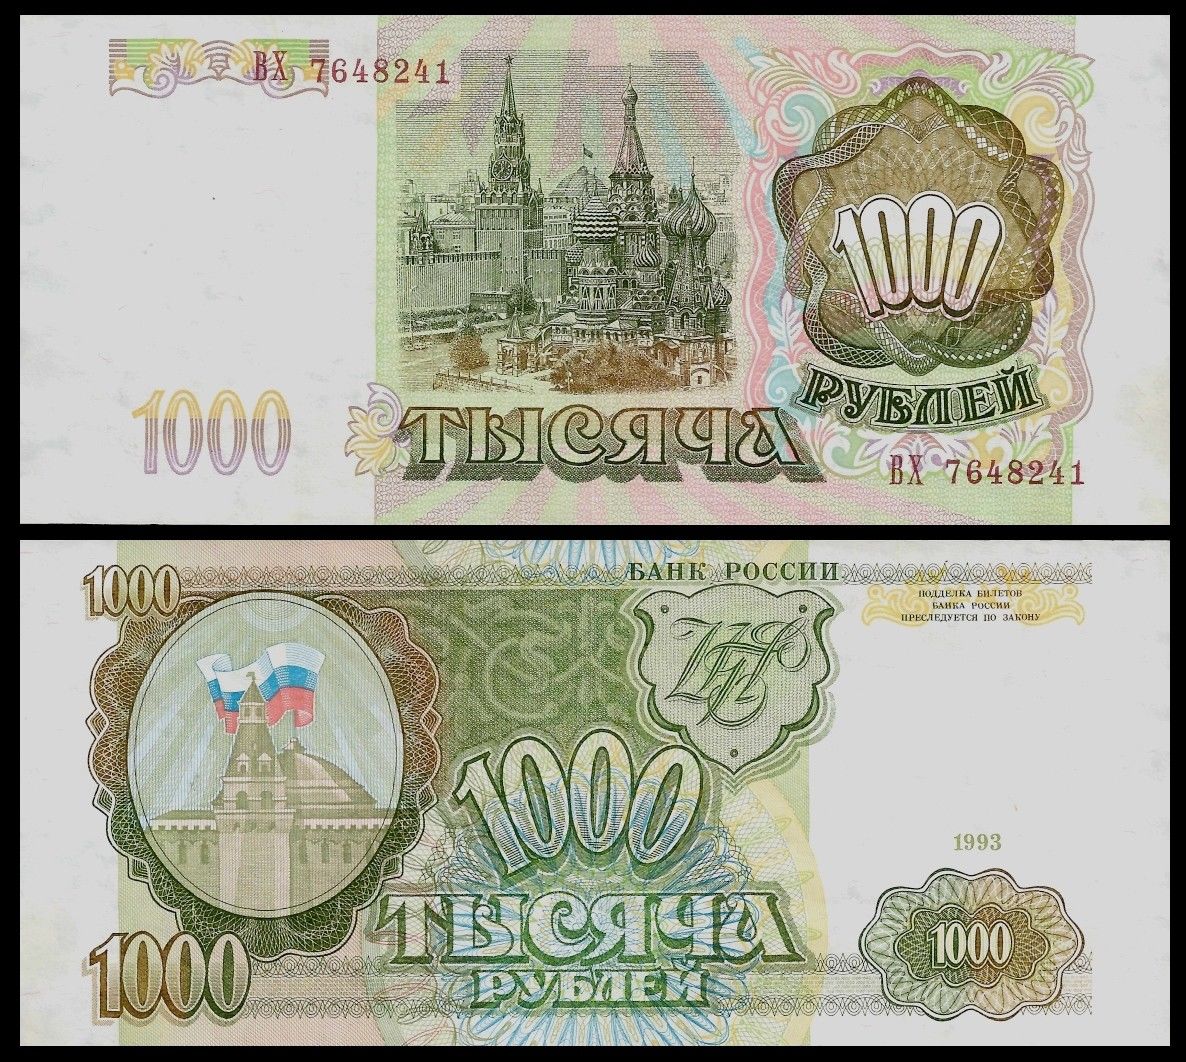 1000 rubles Russia 1993